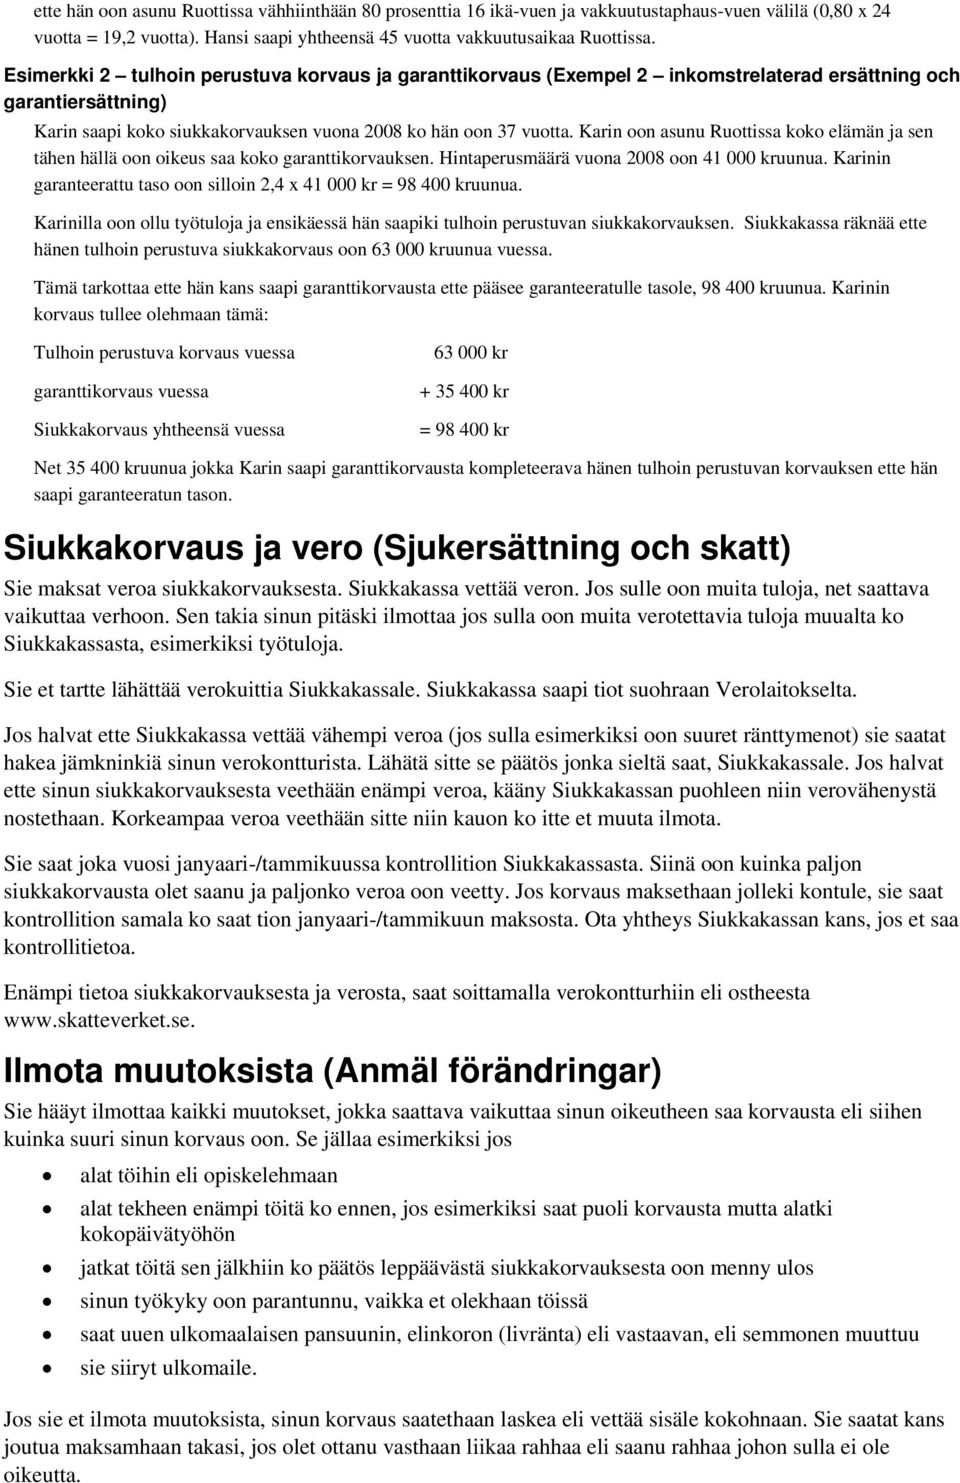 Karin oon asunu Ruottissa koko elämän ja sen tähen hällä oon oikeus saa koko garanttikorvauksen. Hintaperusmäärä vuona 2008 oon 41 000 kruunua.